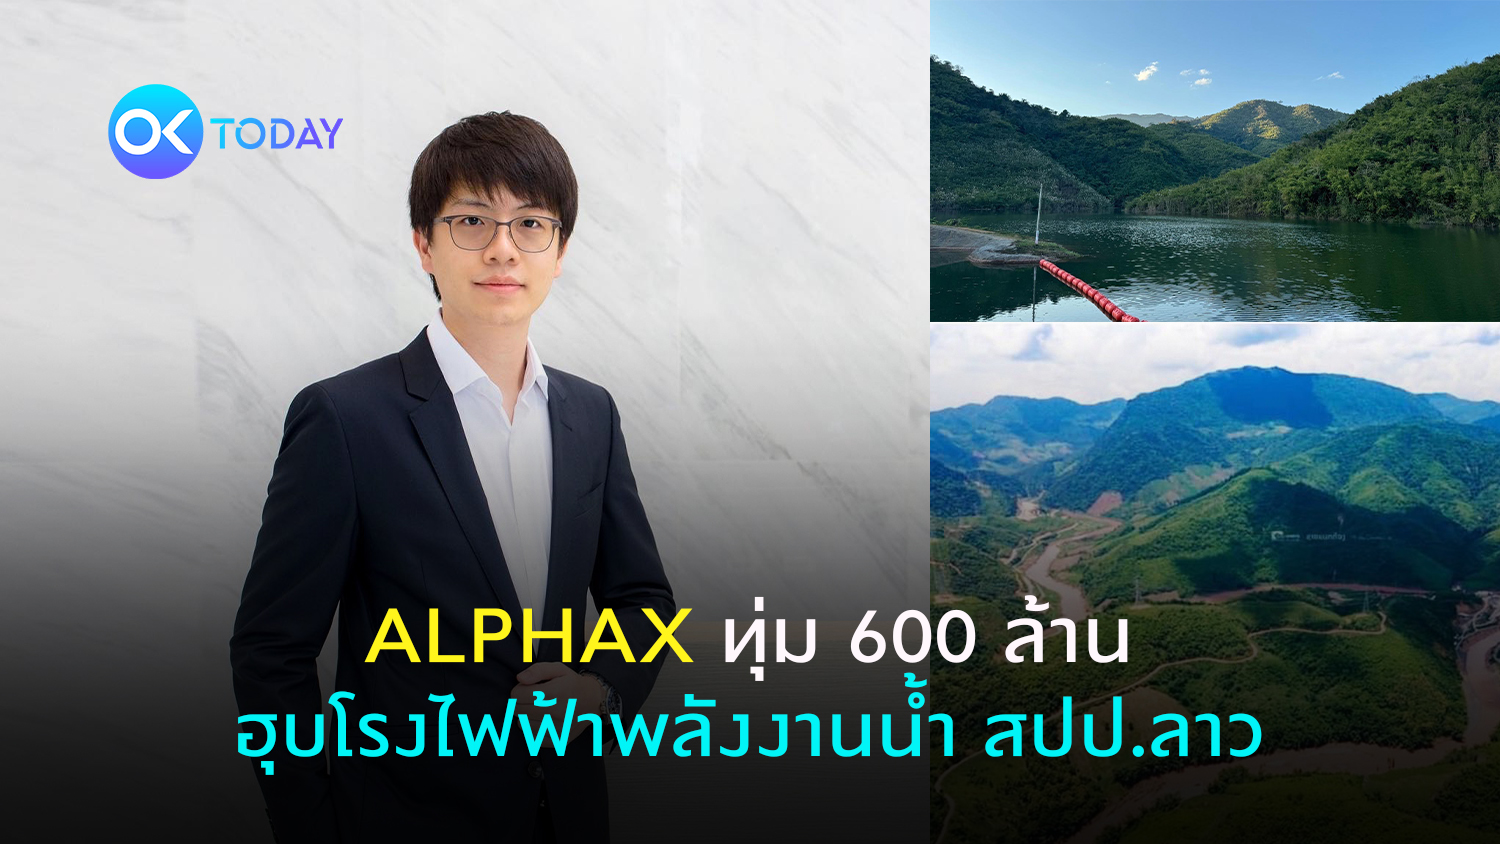 ALPHAX ทุ่ม 600 ล้าน ฮุบโรงไฟฟ้าพลังงานน้ำ สปป.ลาว